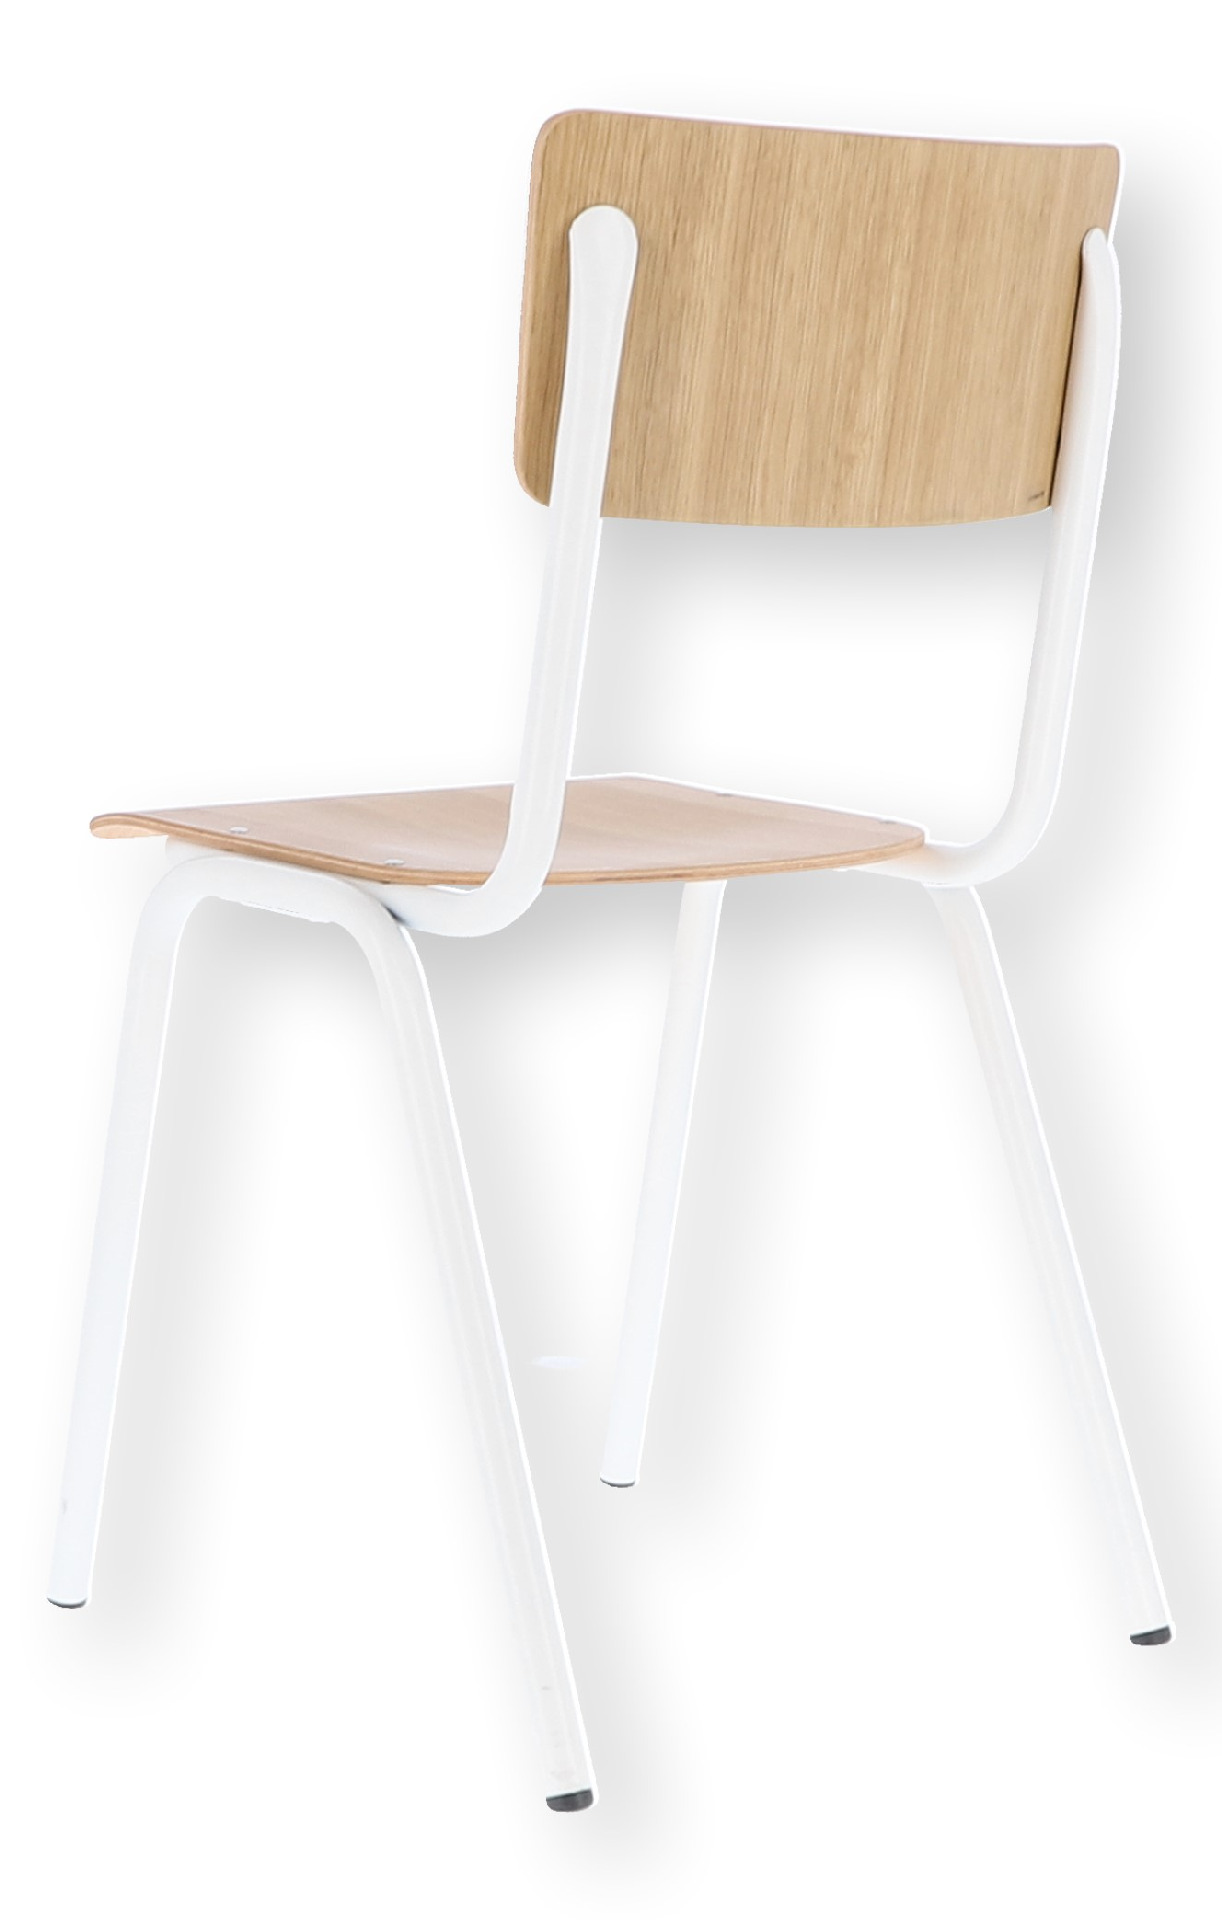 Weiß | Stuhl Eiche / Zero, Weiß / | stapelbar, F710033611 Eiche